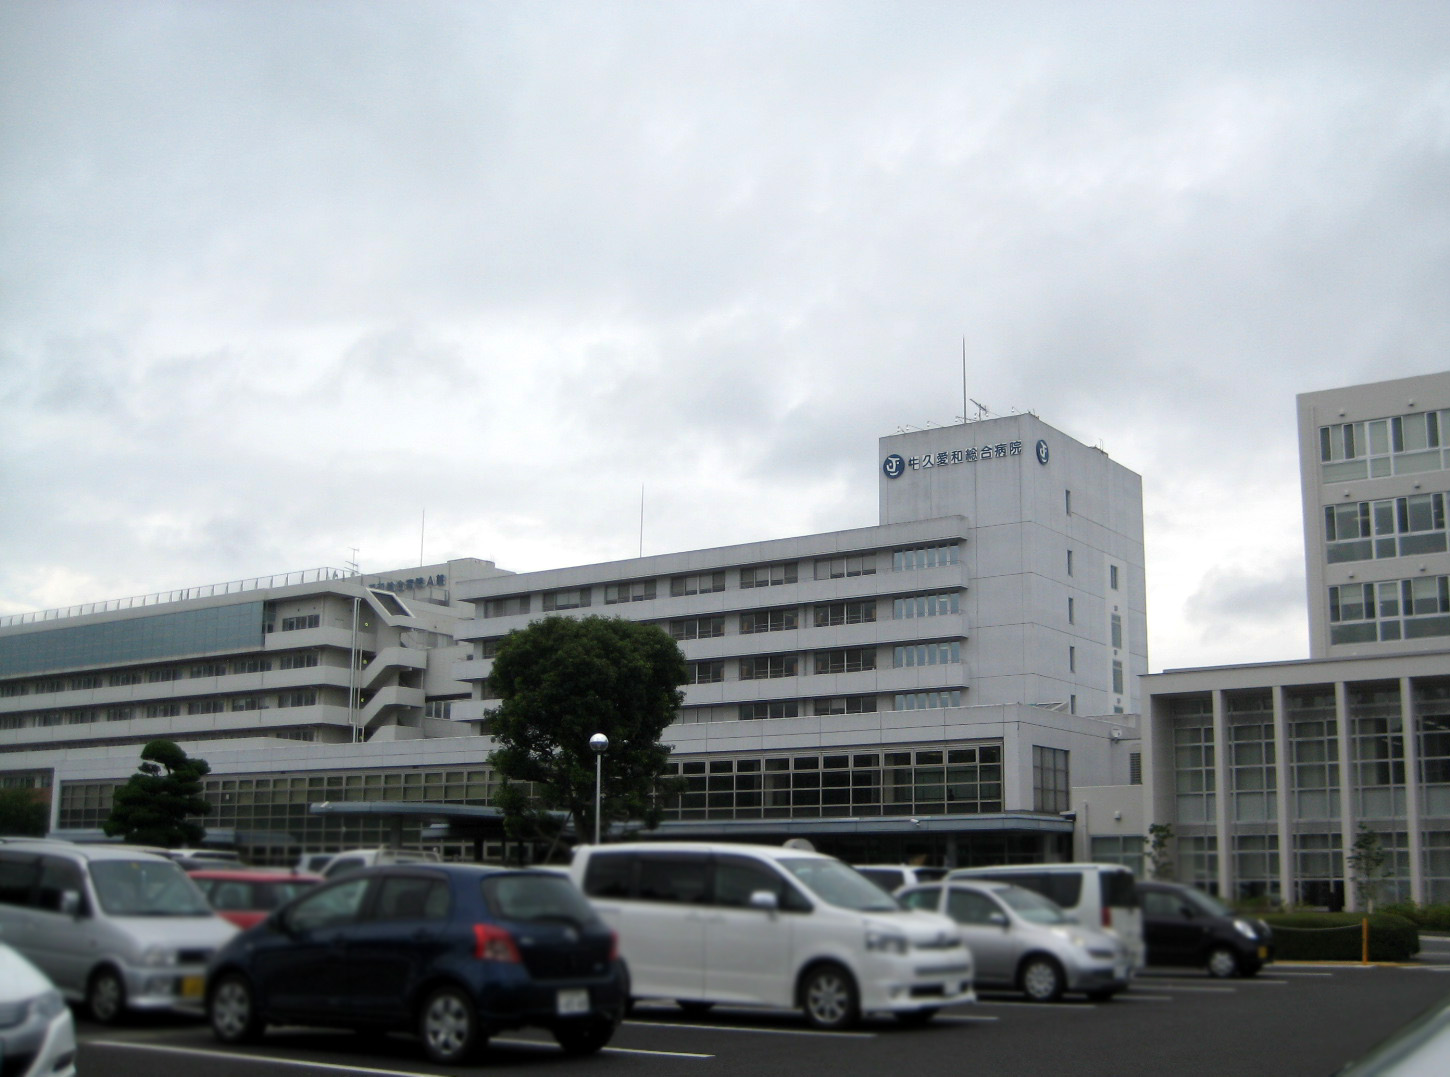 Hospital. Ushikuaiwasogobyoin until the (hospital) 1800m